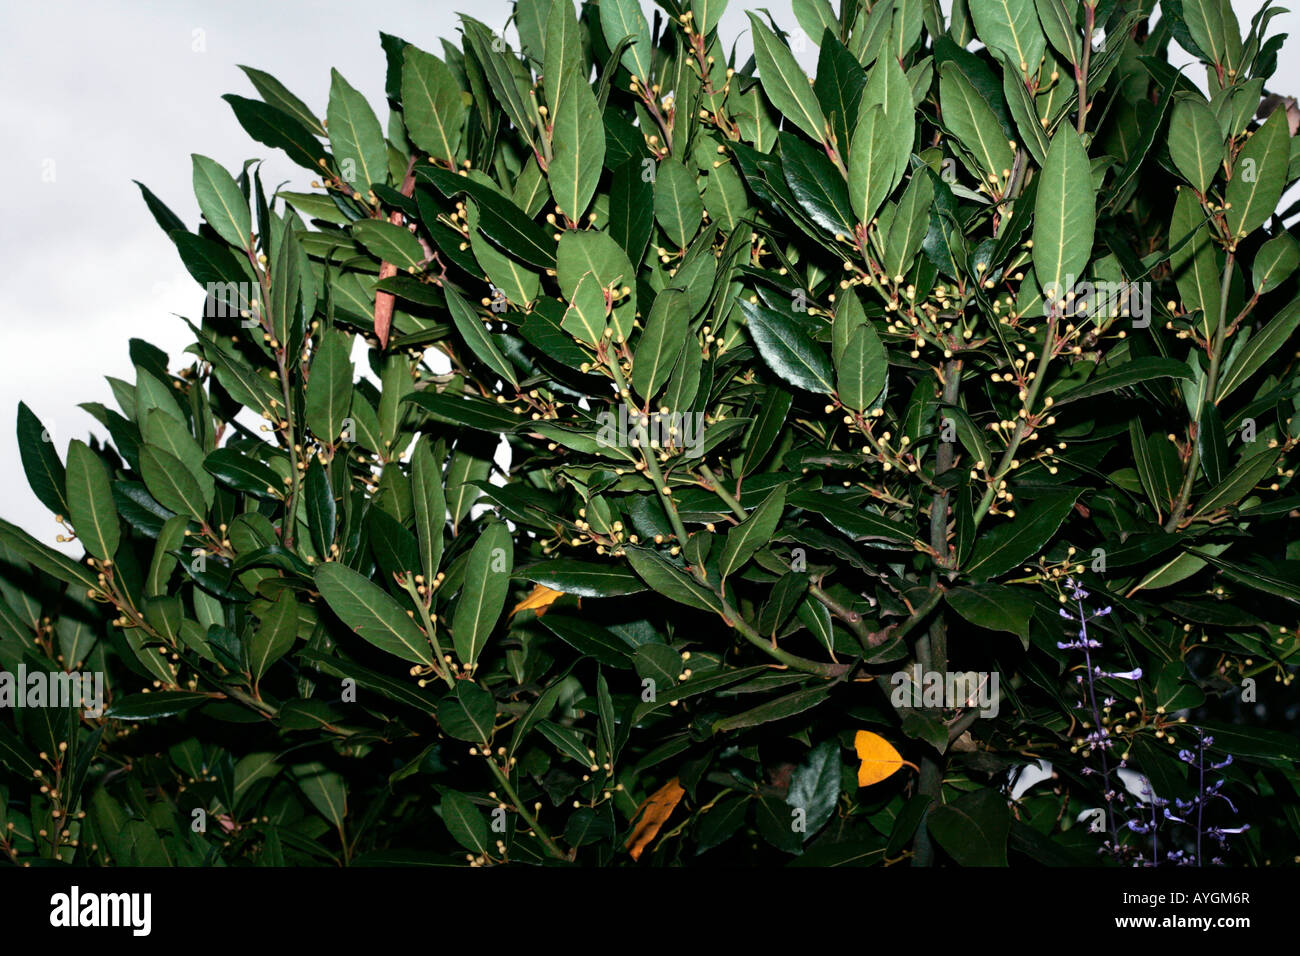 Bay/Laurel/Bay Laurel tree Laurus nobilis Family Lauraceae Stock ...